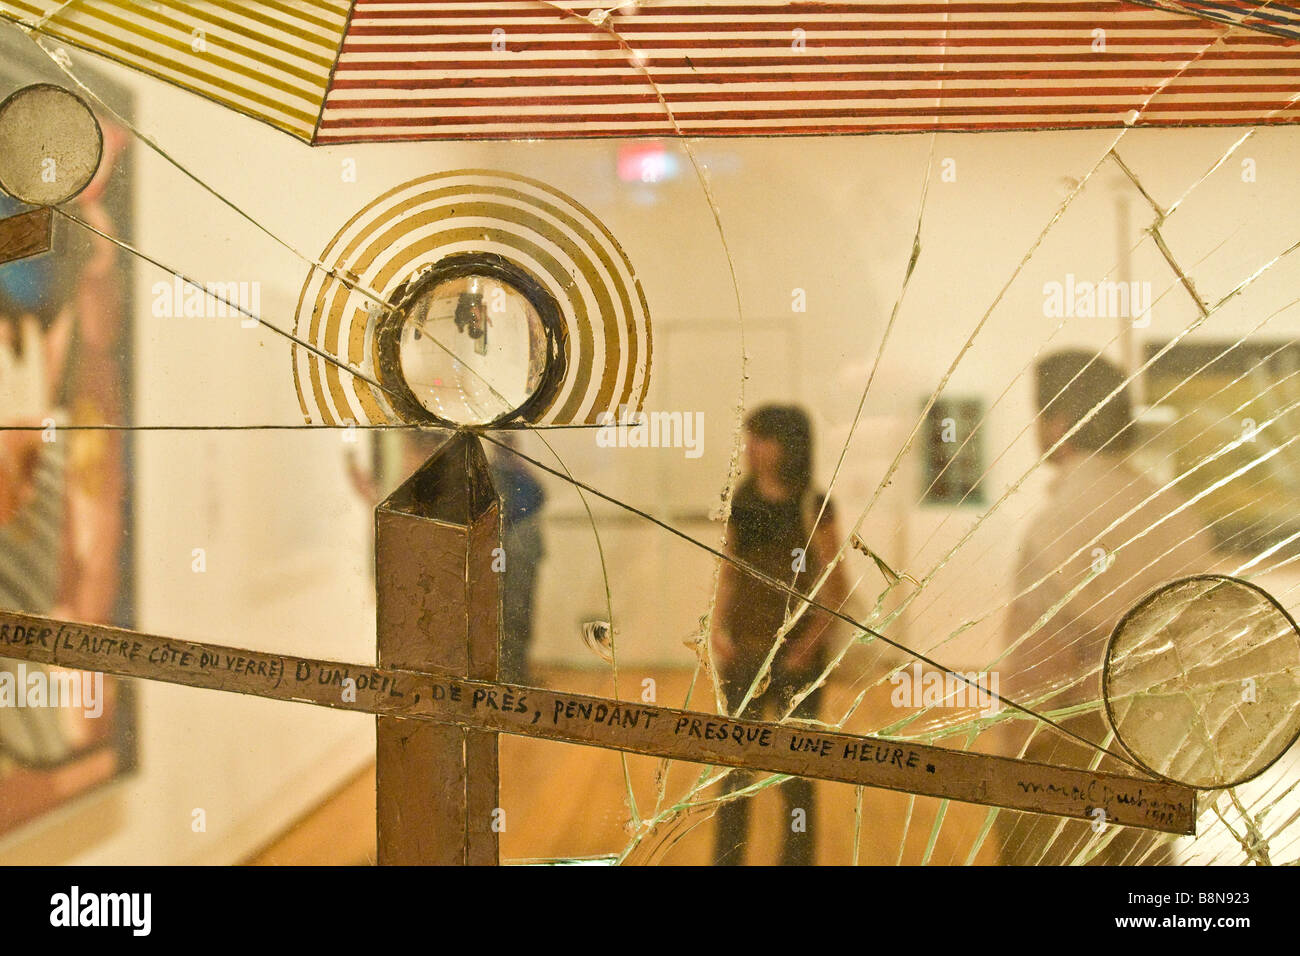 Les visiteurs du Musée d'art moderne reflète dans une exposition mettant un miroir brisé. Banque D'Images